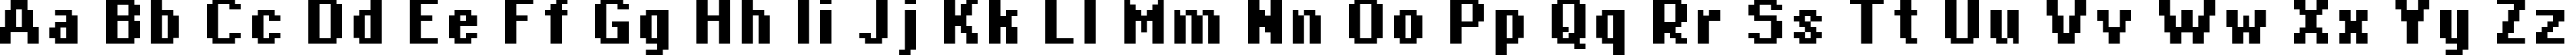 Пример написания английского алфавита шрифтом copy 08_66